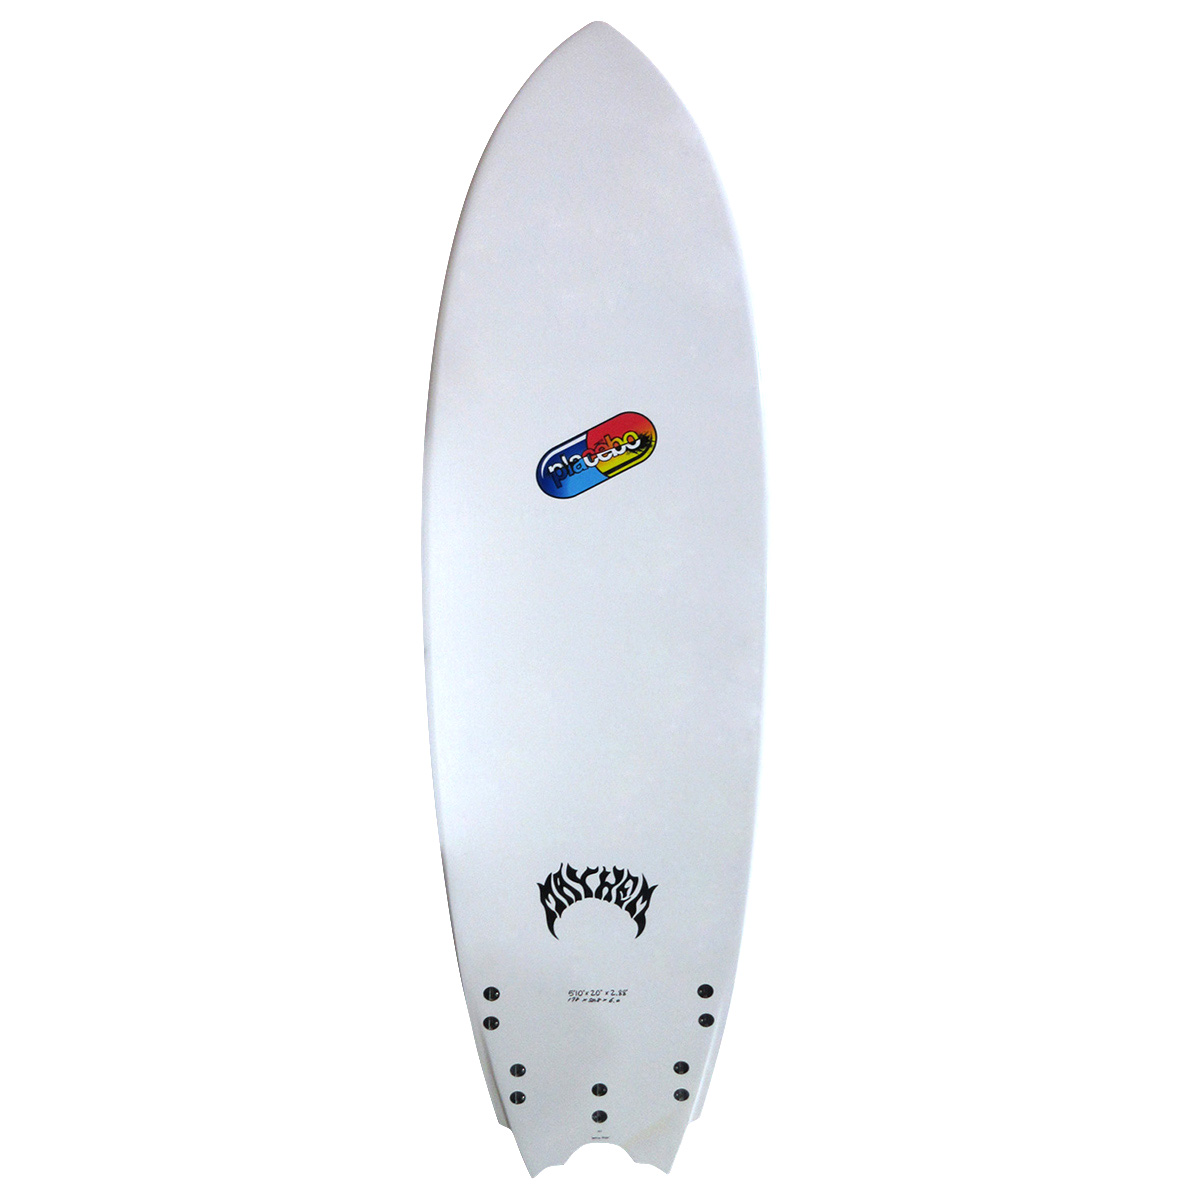 プレセボ サーフボード Placebo surf bord - サーフィン・ボディボード